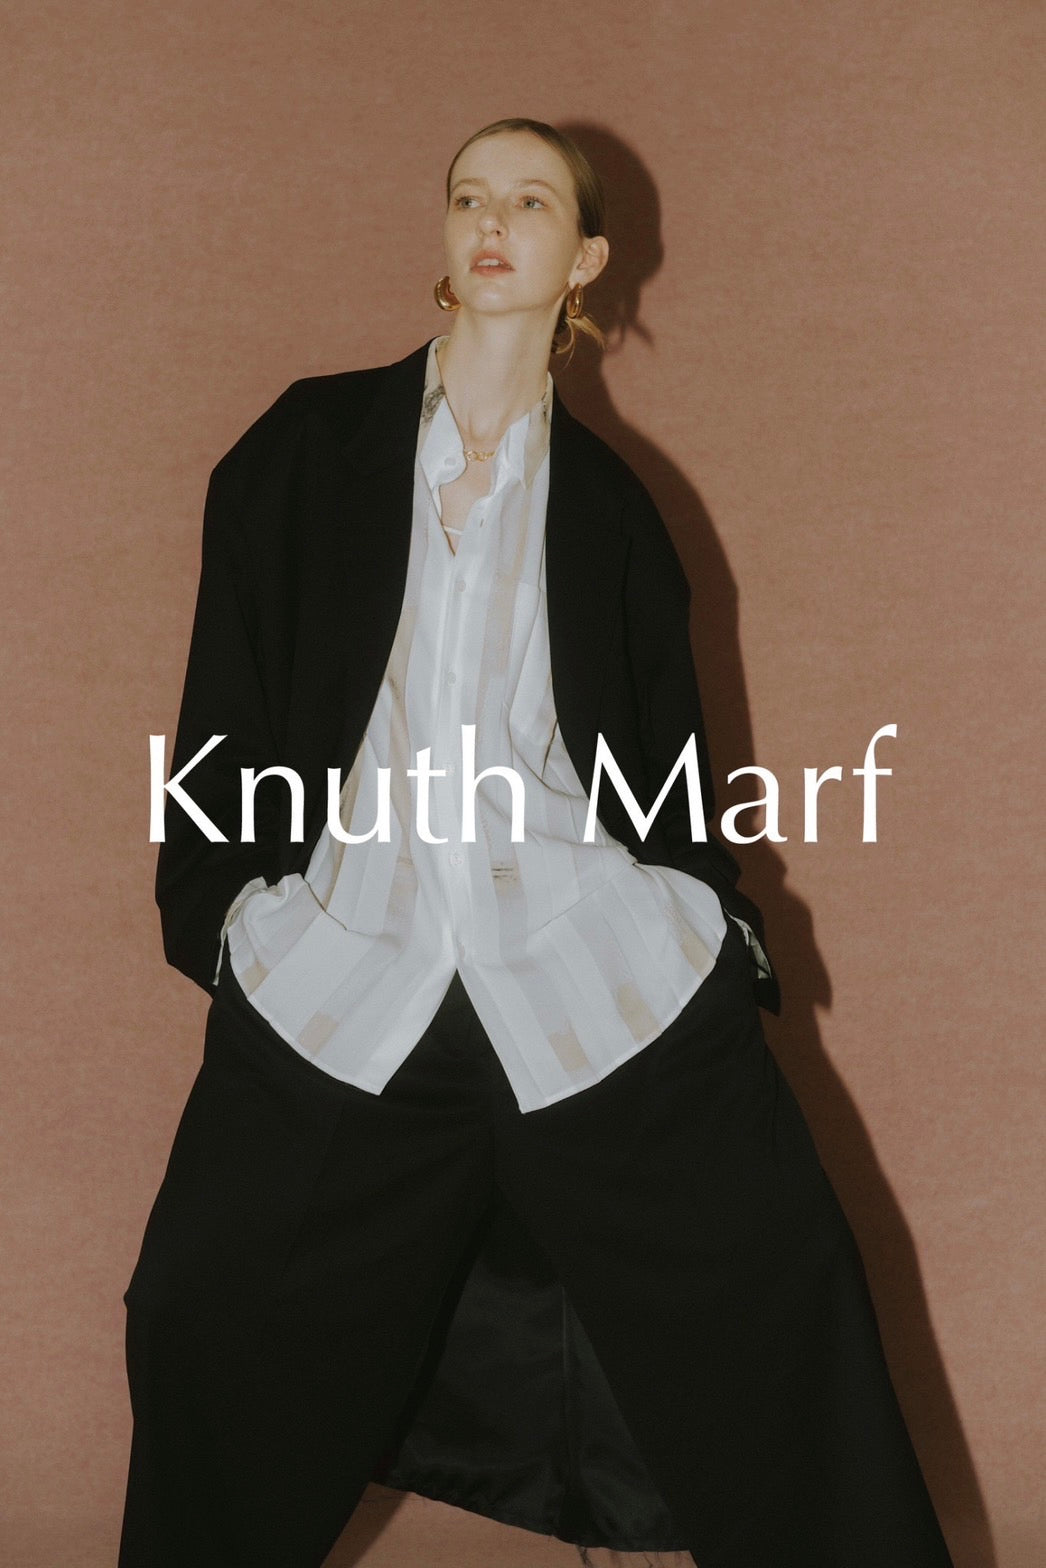 Knuth Marf